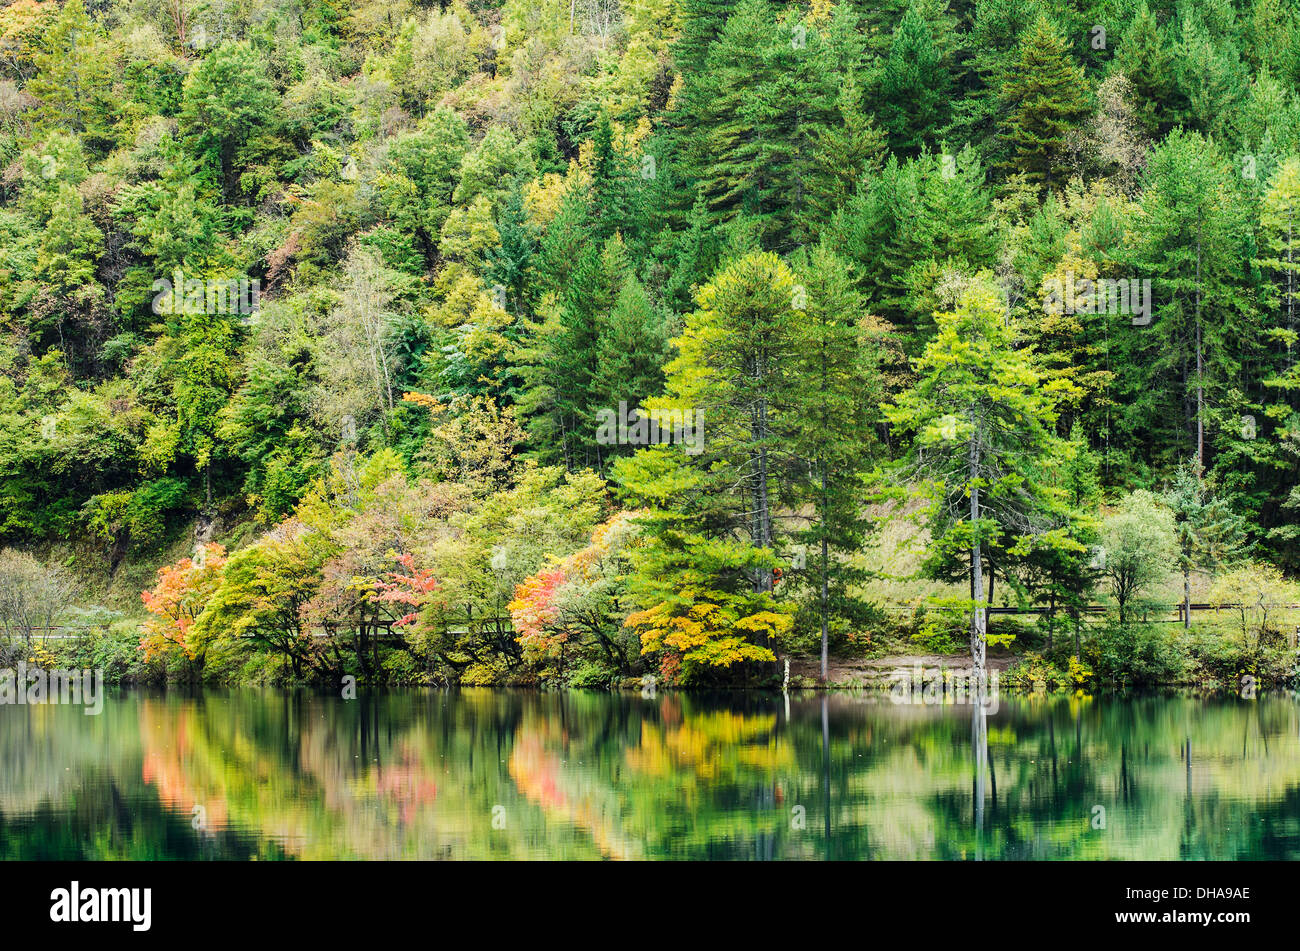 Nadel- und laubabwerfende Bäume In herbstlichen Farben auf einer Küstenlinie spiegelt sich In einem ruhigen See Stockfoto